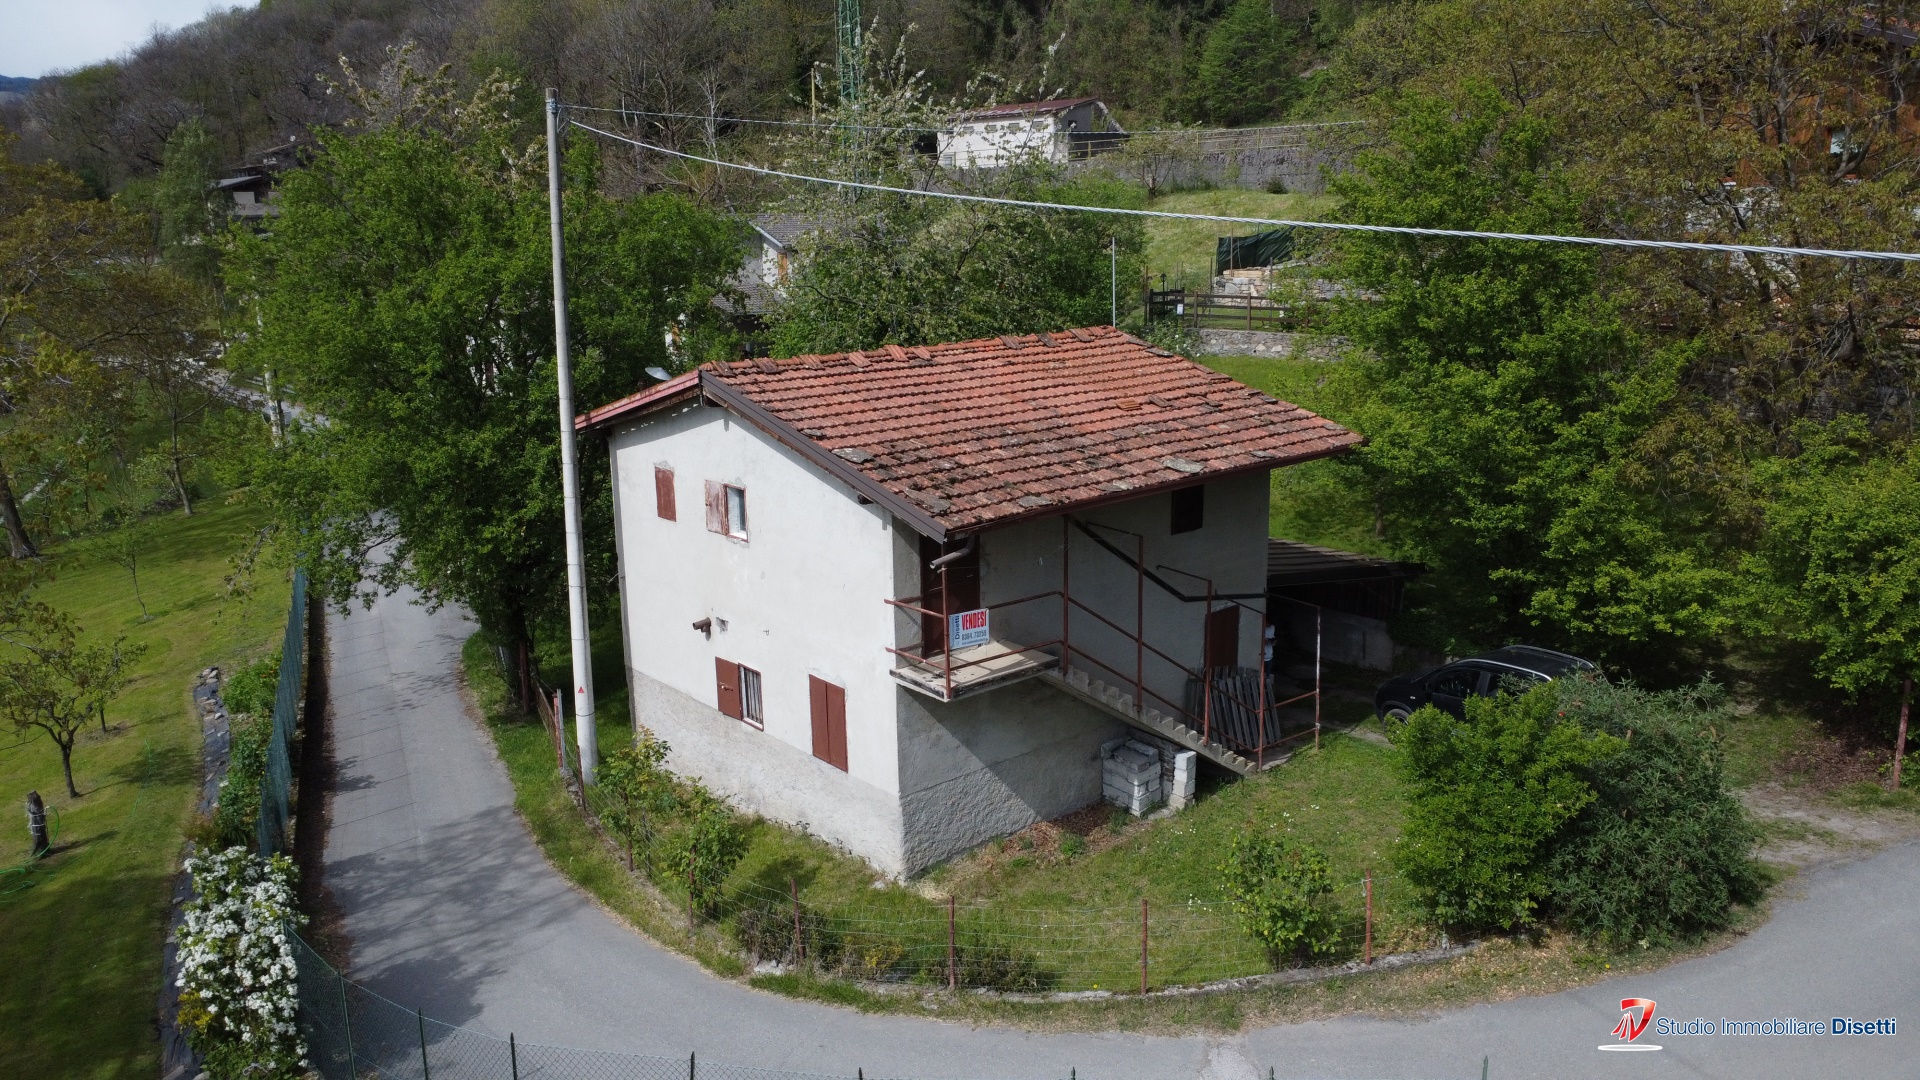 Villa in vendita a Cedegolo, 5 locali, prezzo € 65.000 | PortaleAgenzieImmobiliari.it